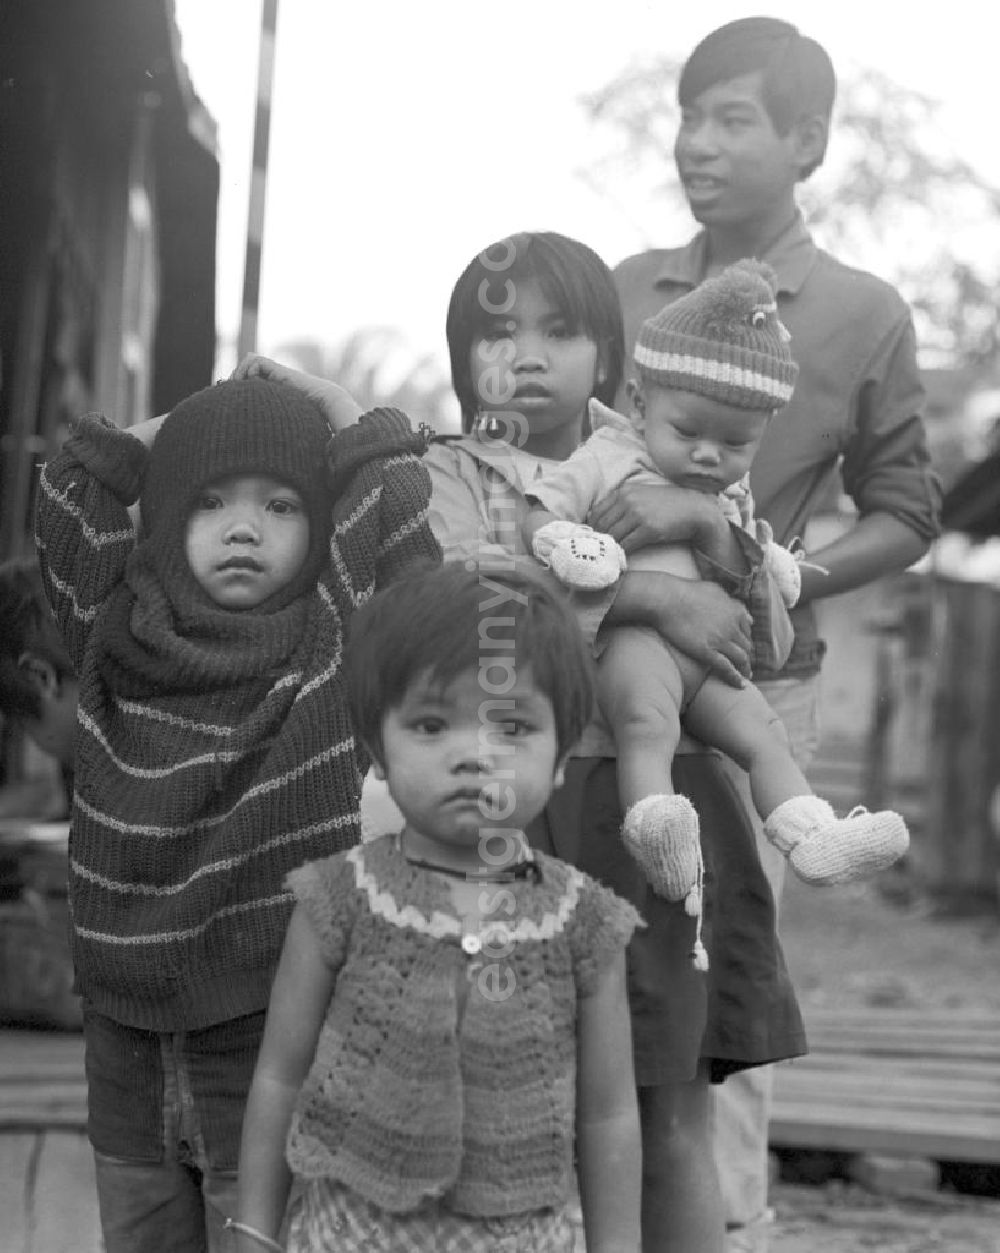 GDR image archive: Vientiane - Kinder aus dem Volksstamm der Meo, auch Hmong genannt, in Vientiane, der Hauptstadt der Demokratischen Volksrepublik Laos. Die Hmong gehörten zu einer infolge des Vietnam-Krieges verfolgten und zurückgezogen lebenden Minderheit in Laos.